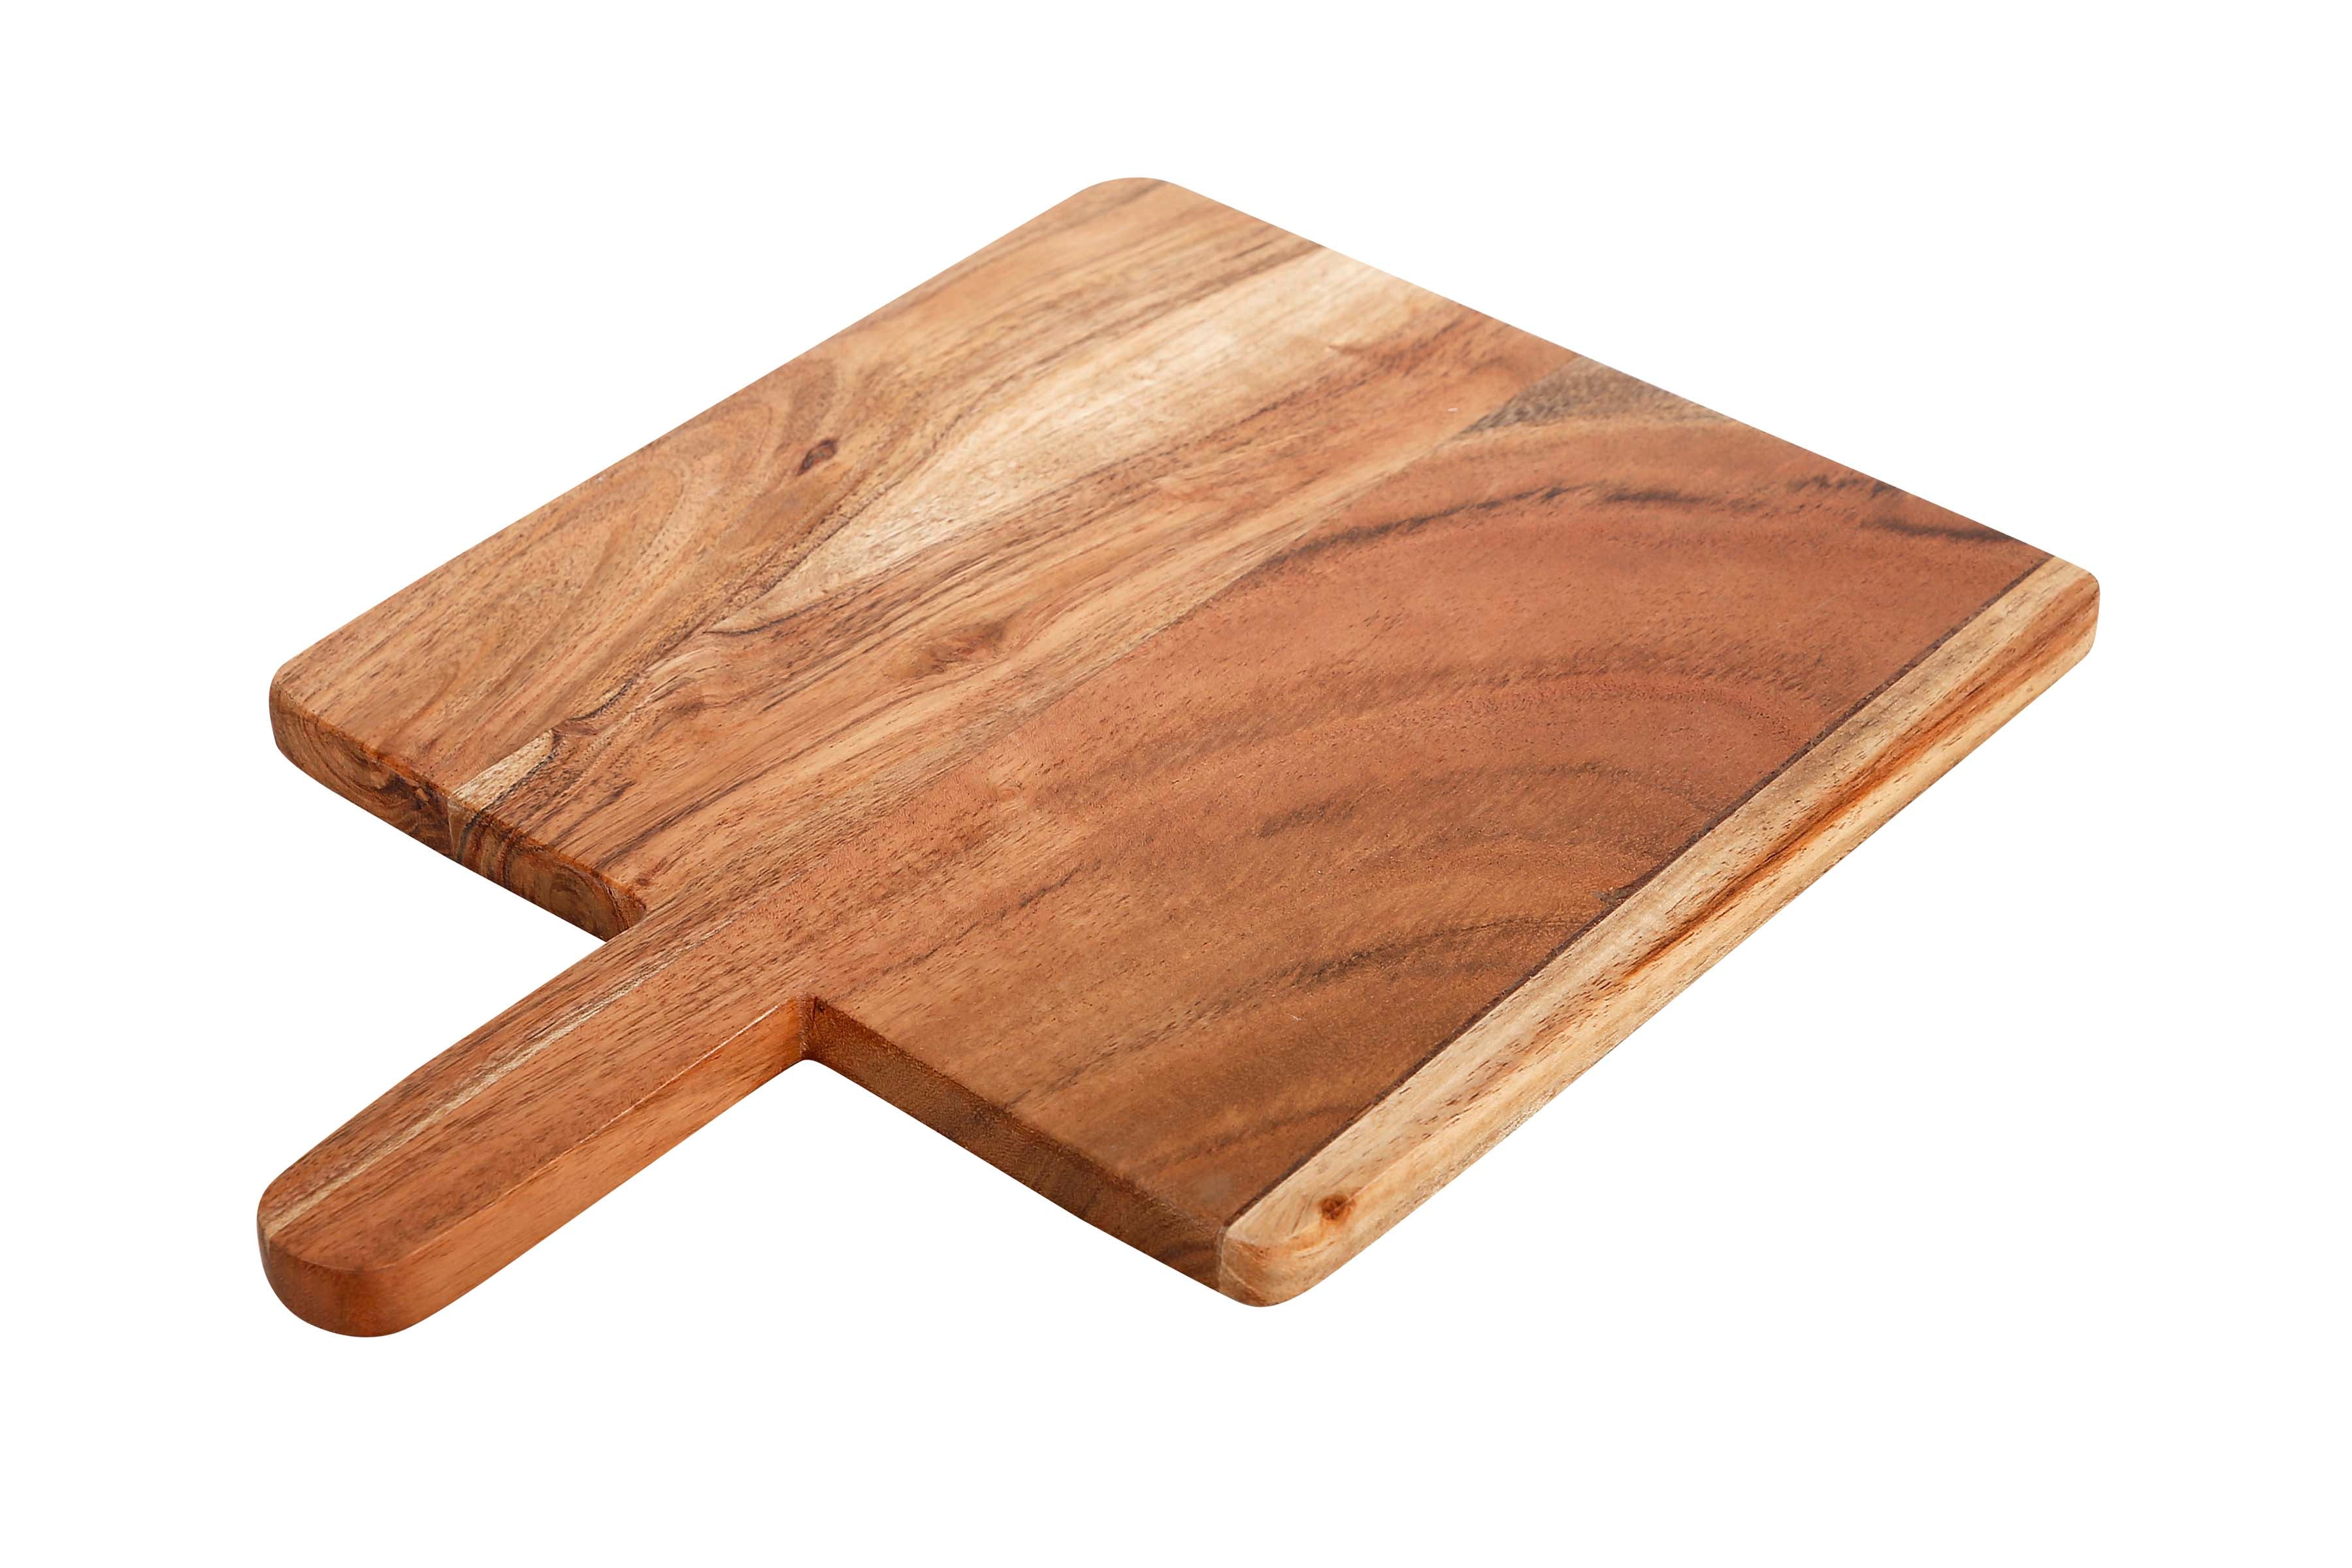 Acacia Wood Cutting Board, 2 Piece Set